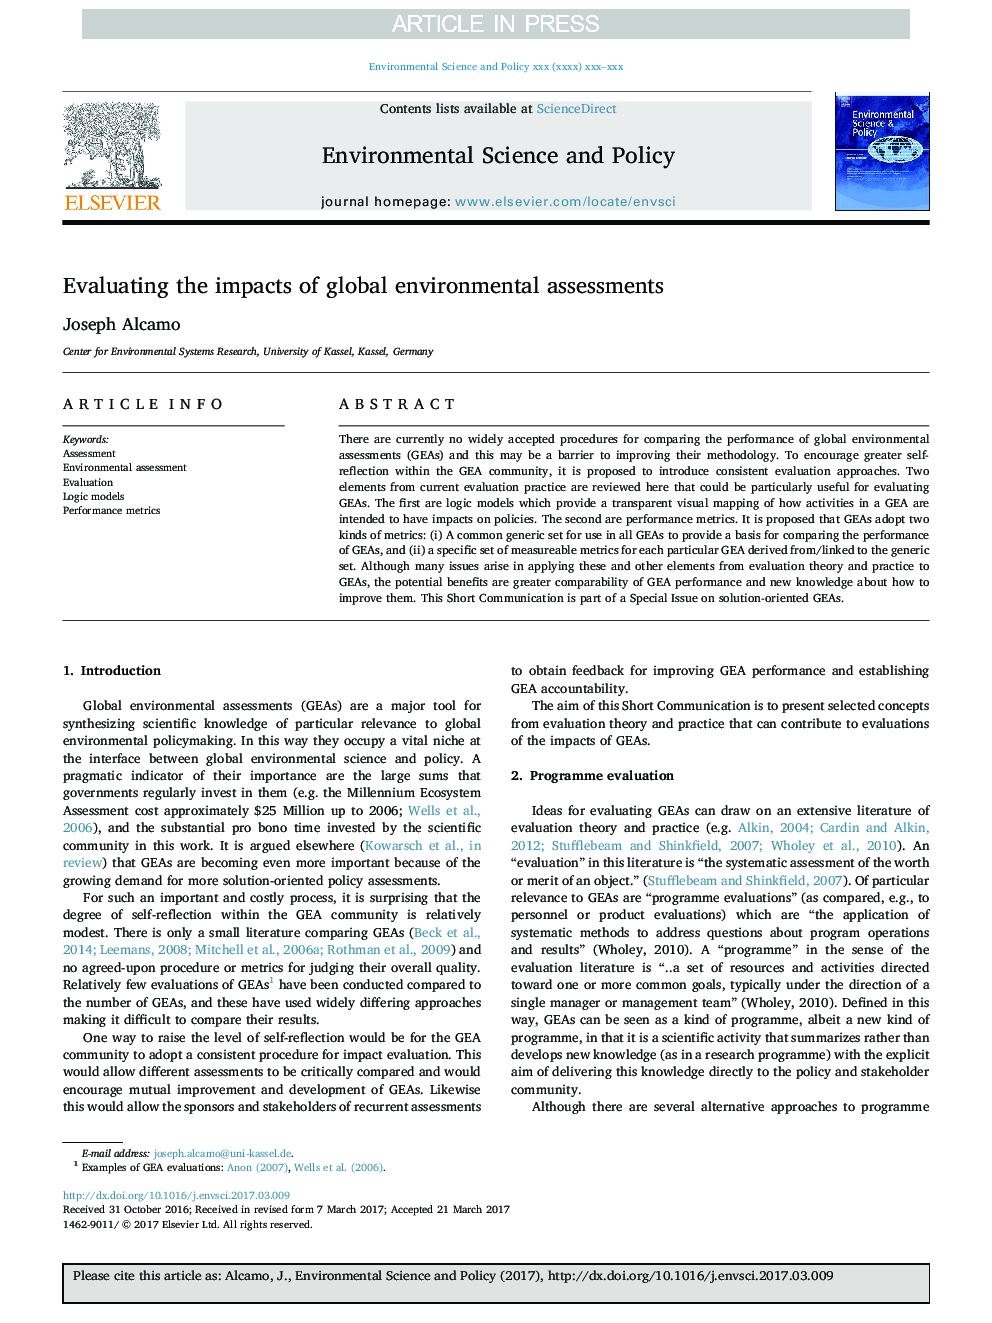 ارزیابی اثرات ارزیابی های محیطی جهانی 